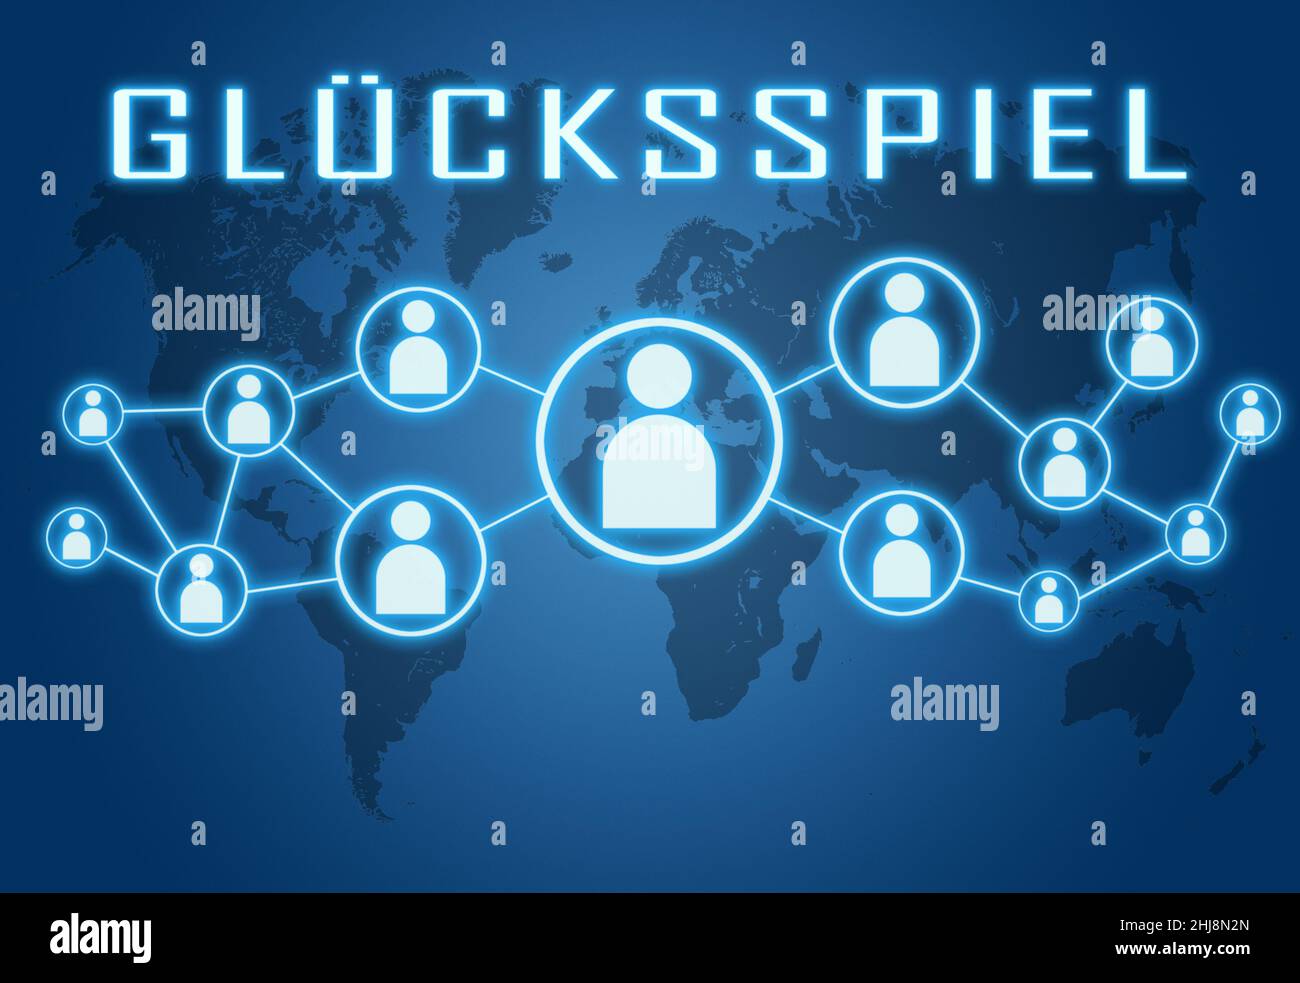 Gluecksspiel - parola tedesca per il gioco d'azzardo o il gioco d'azzardo - testo concetto su sfondo blu con mappa del mondo e icone sociali. Foto Stock